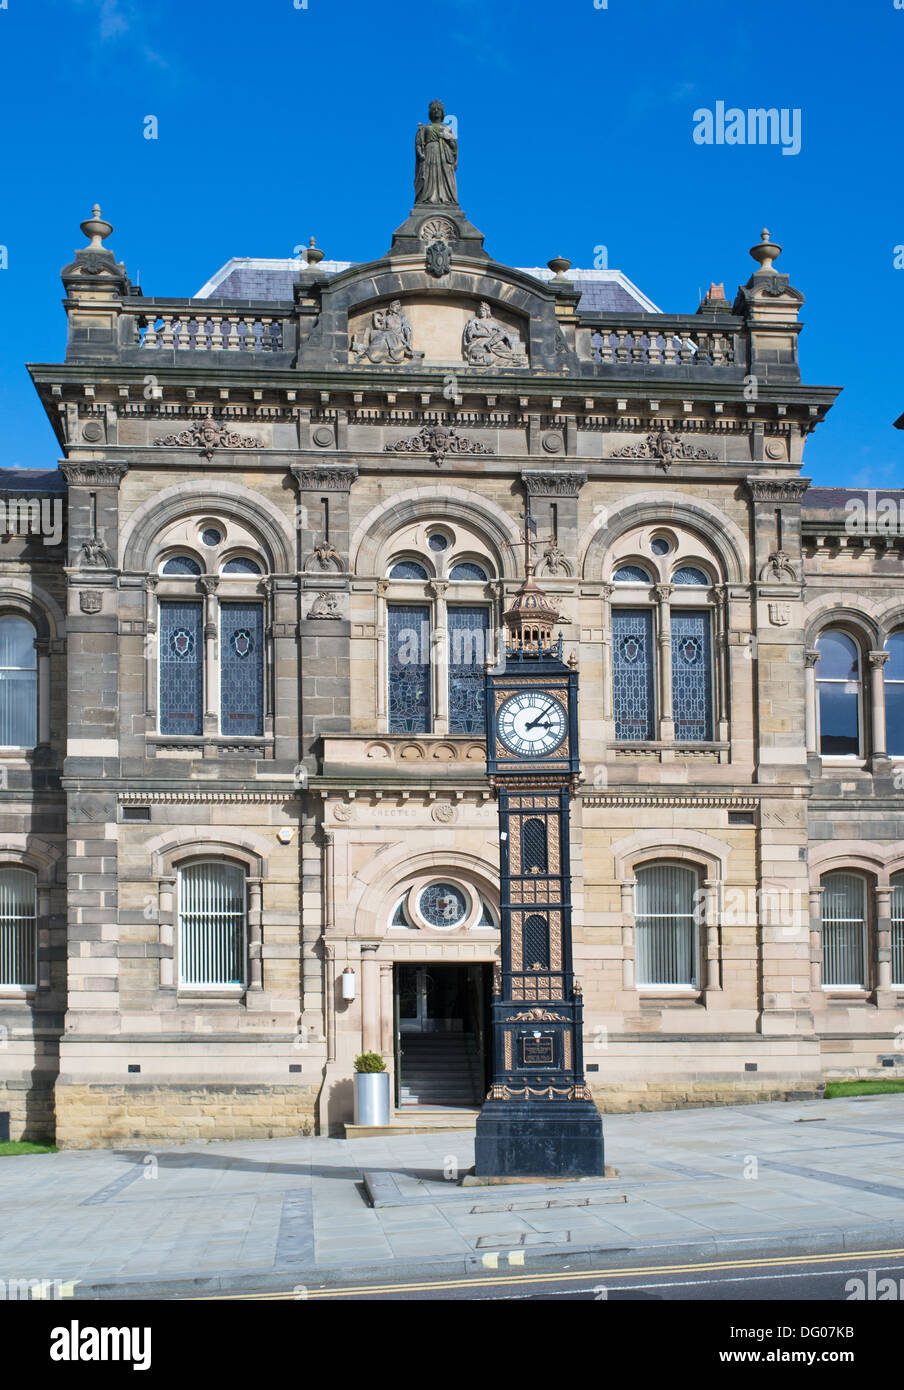 Der unter Denkmalschutz stehende Uhrturm aus Gusseisen vor dem alten Rathaus in Gateshead, Nord-Ost-England, Großbritannien Stockfoto